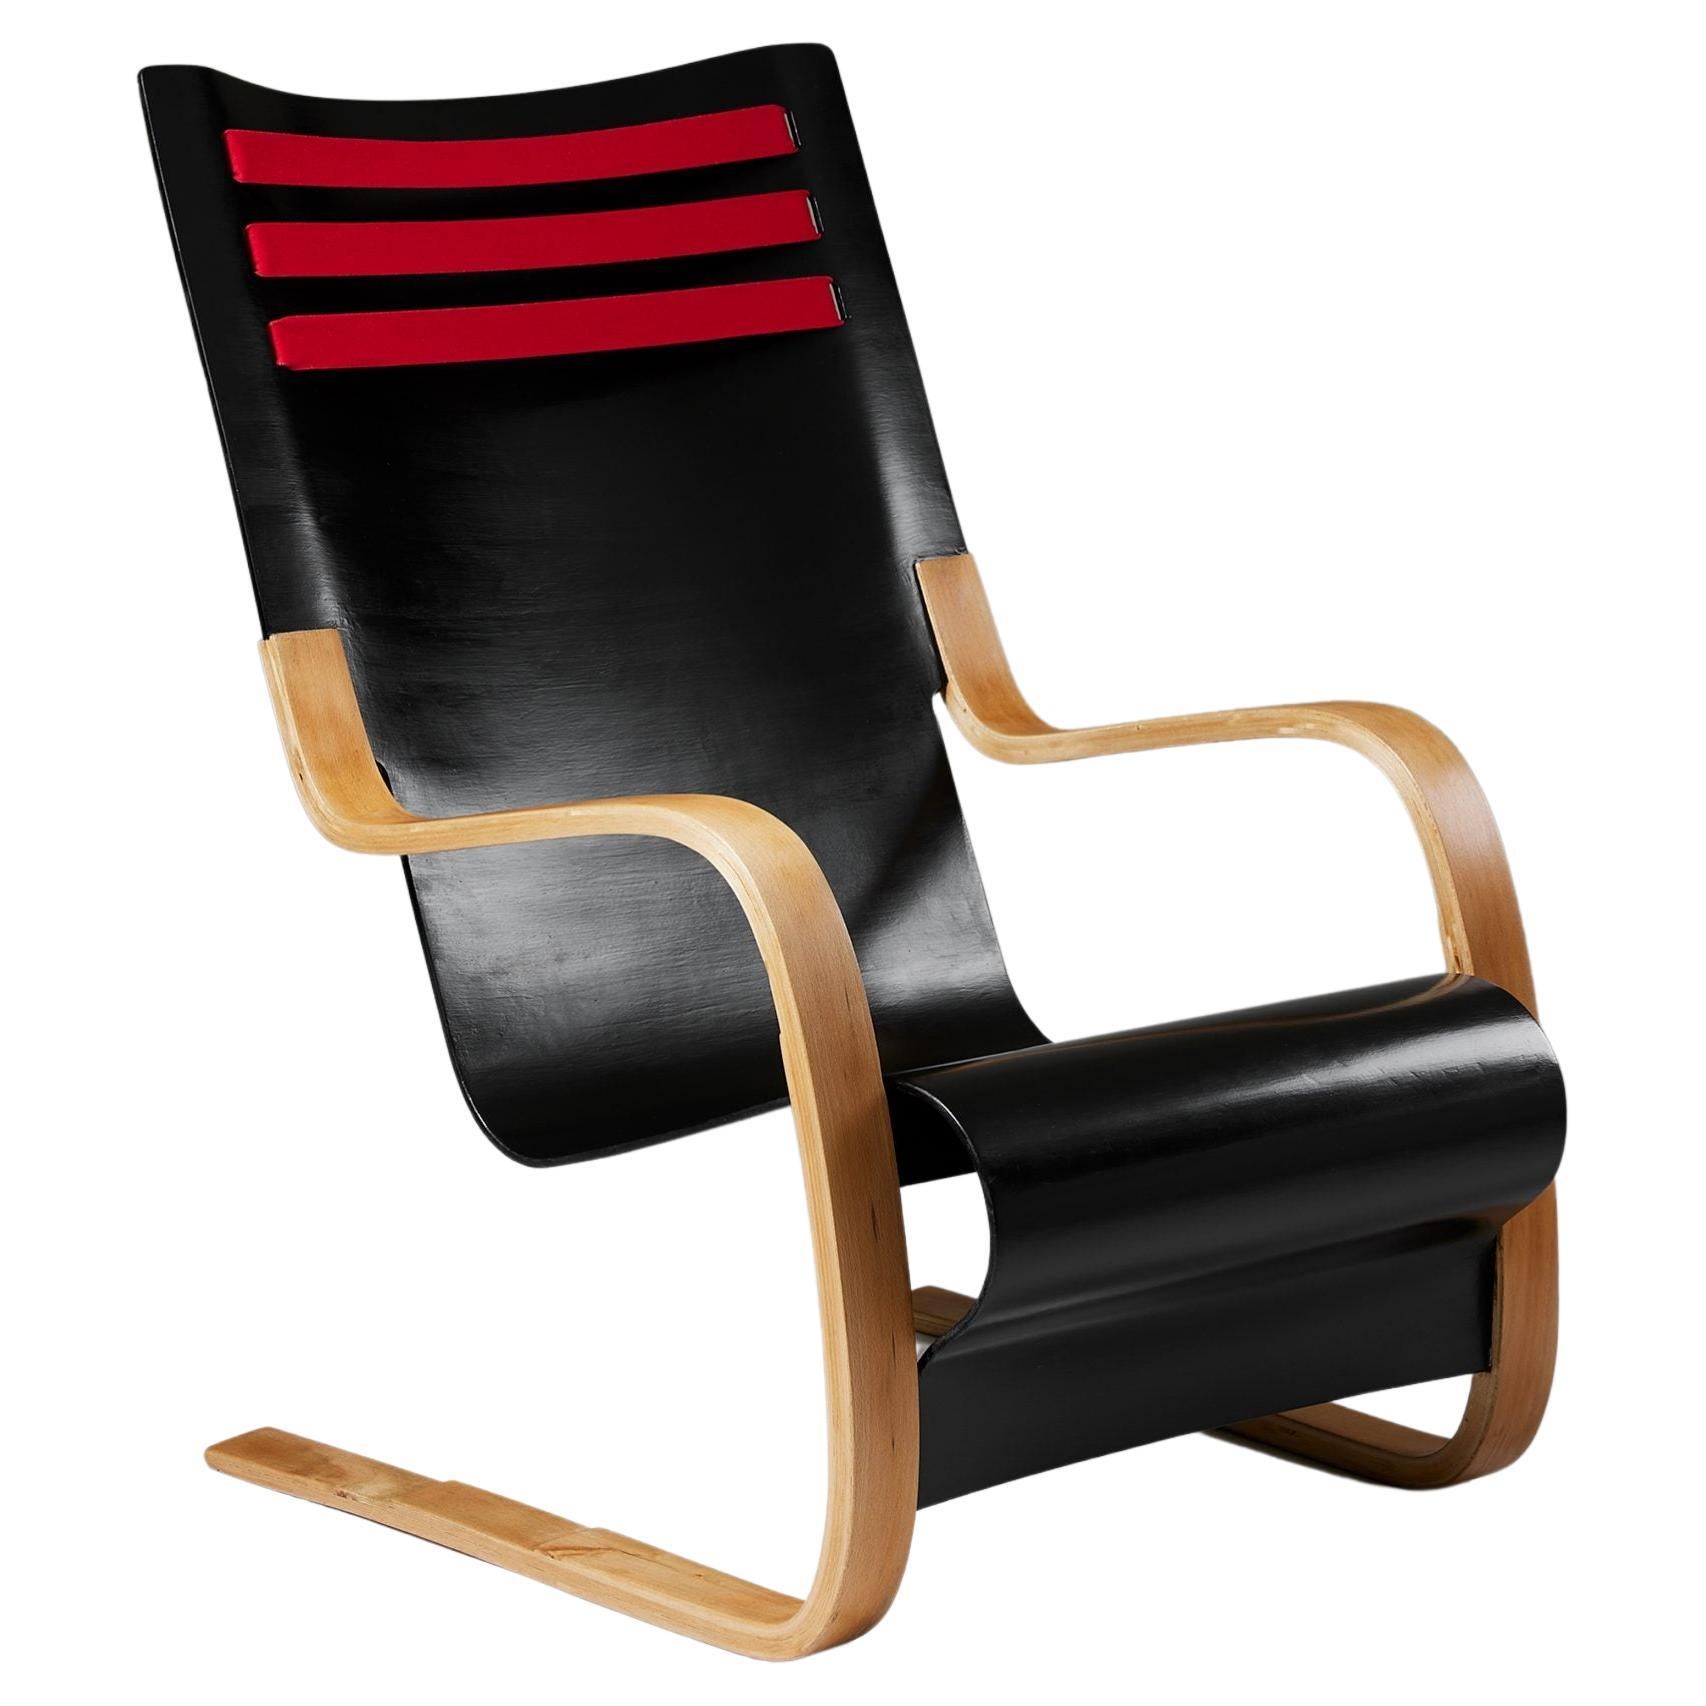 Rare High-Back Chair Model 402 Designed by Alvar Aalto for OY Huonekalu-Ja Raken